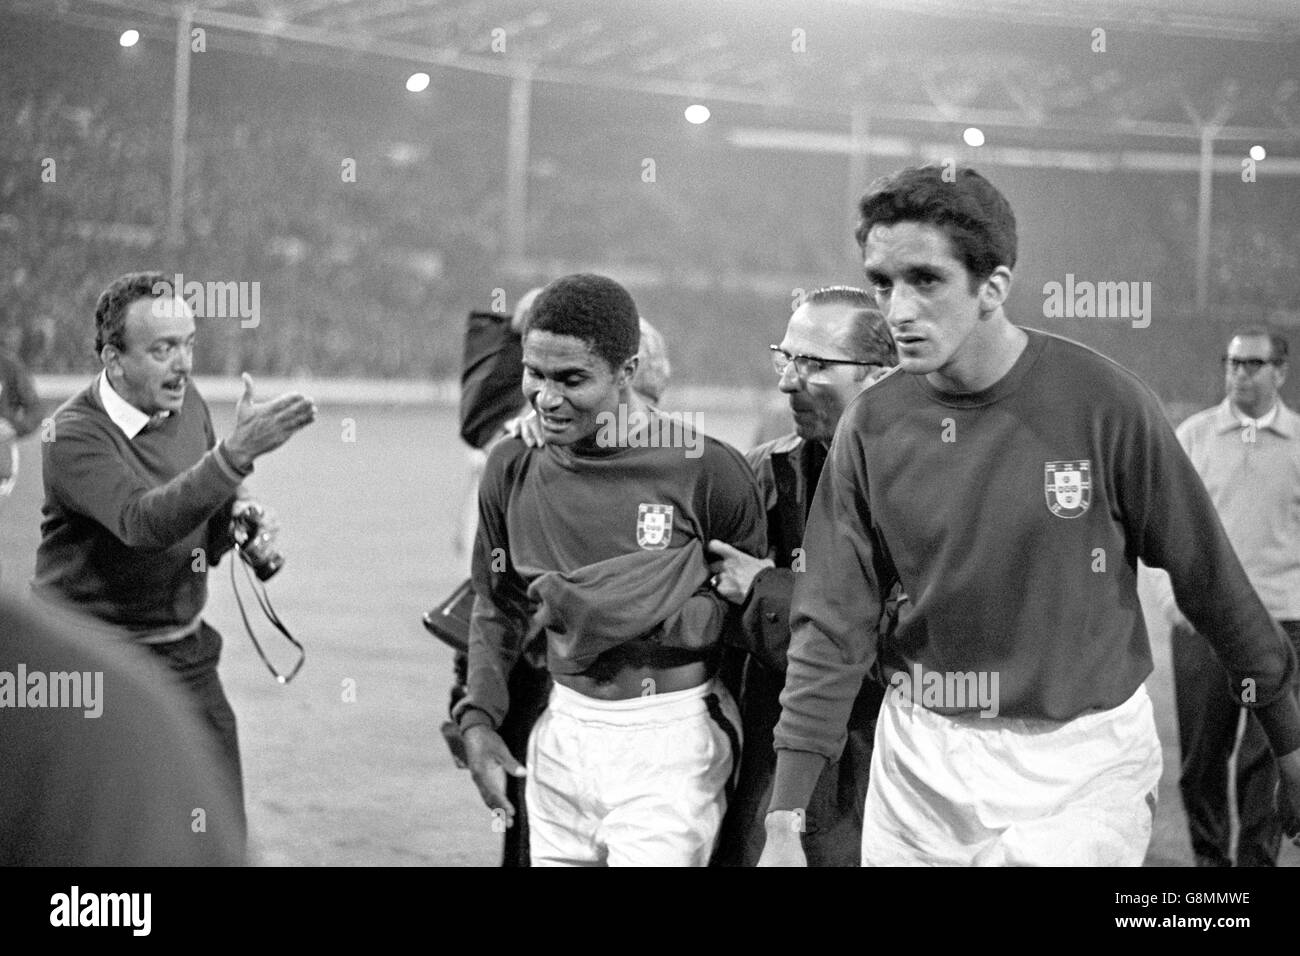 Calcio - Coppa del mondo Inghilterra 1966 - Semifinale - Portogallo / Inghilterra - Stadio di Wembley. Eusebio (l) e Jose Torres (r) del Portogallo si intruzzano fuori dal campo dopo la sconfitta della loro squadra del 2-1 Foto Stock